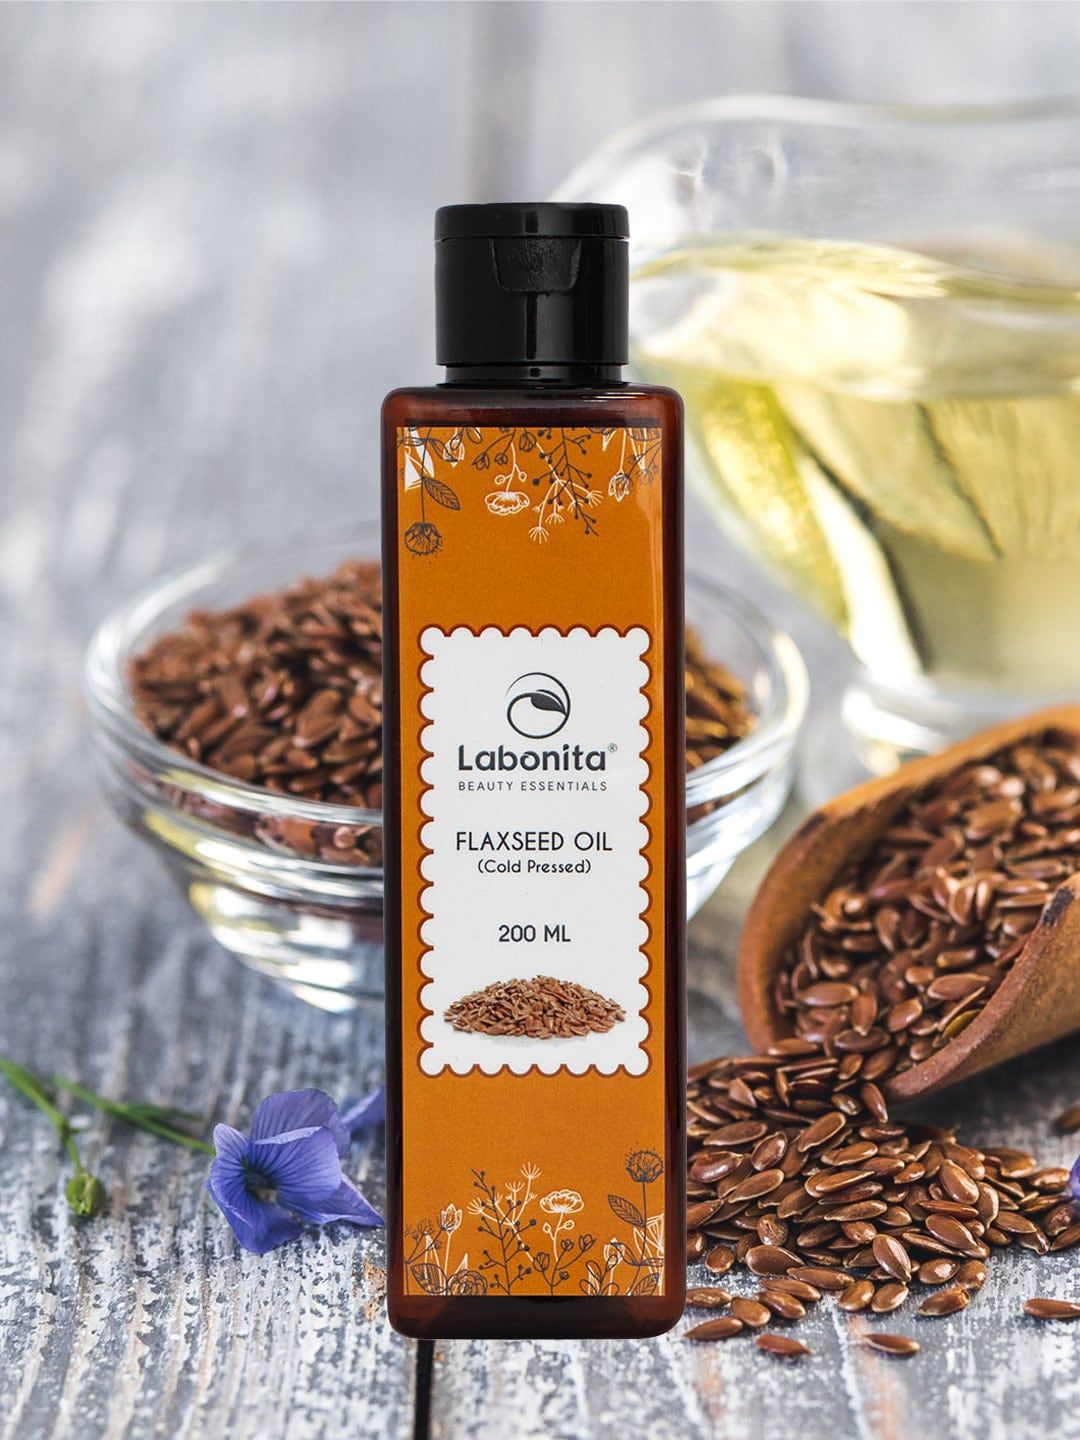 Labonita Cold Pressed Flaxseed Oil - 200 ml Price in India